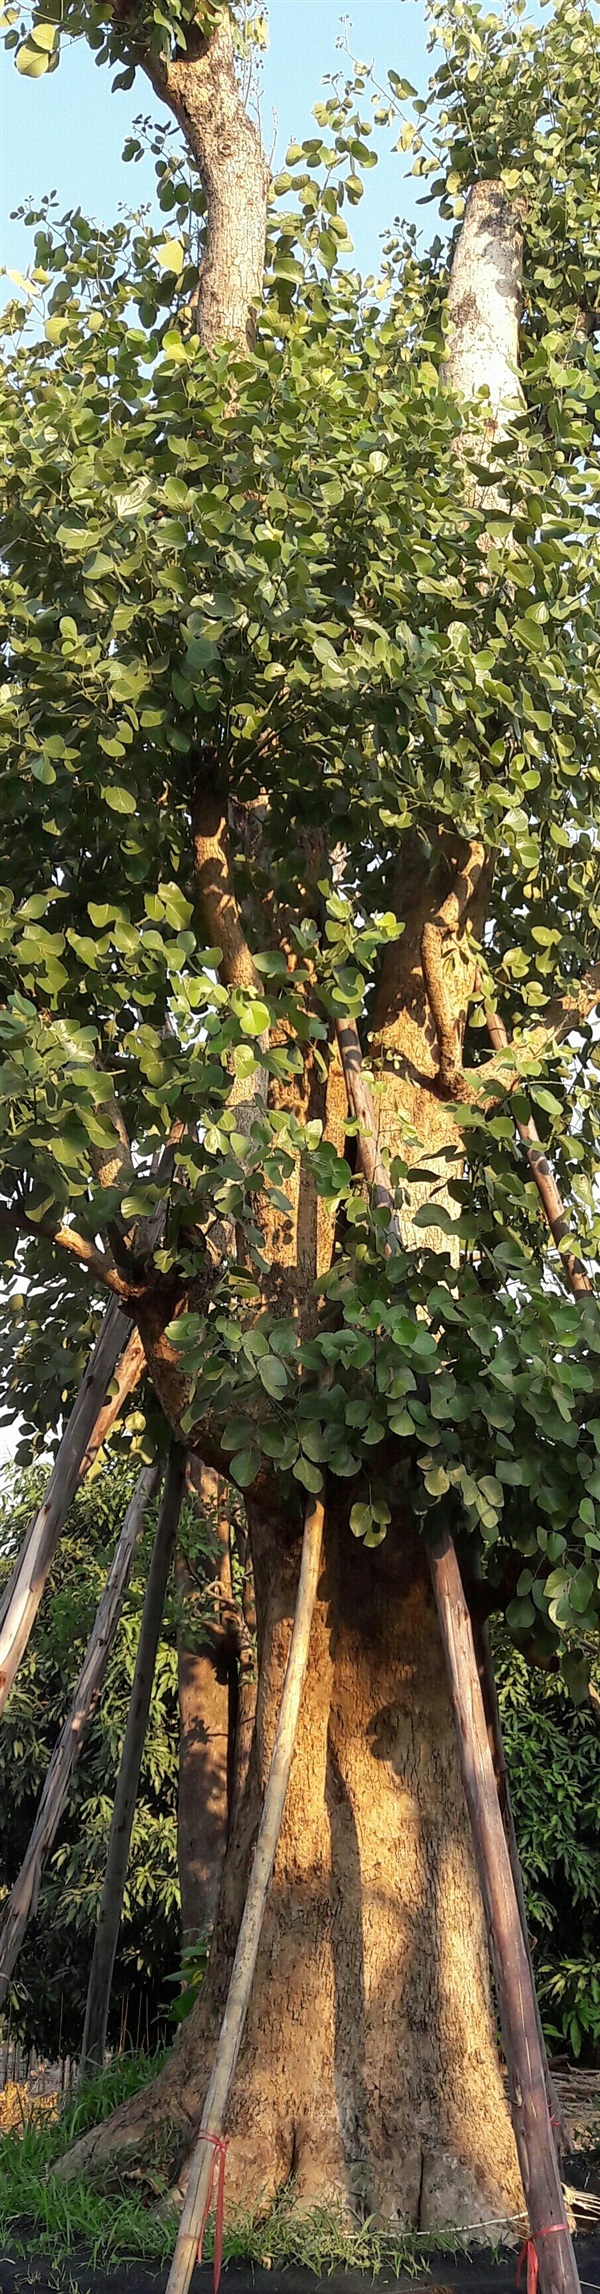 ต้นทองกวาว | สวนสุวนันท์ พันธุ์ไม้ - แก่งคอย สระบุรี